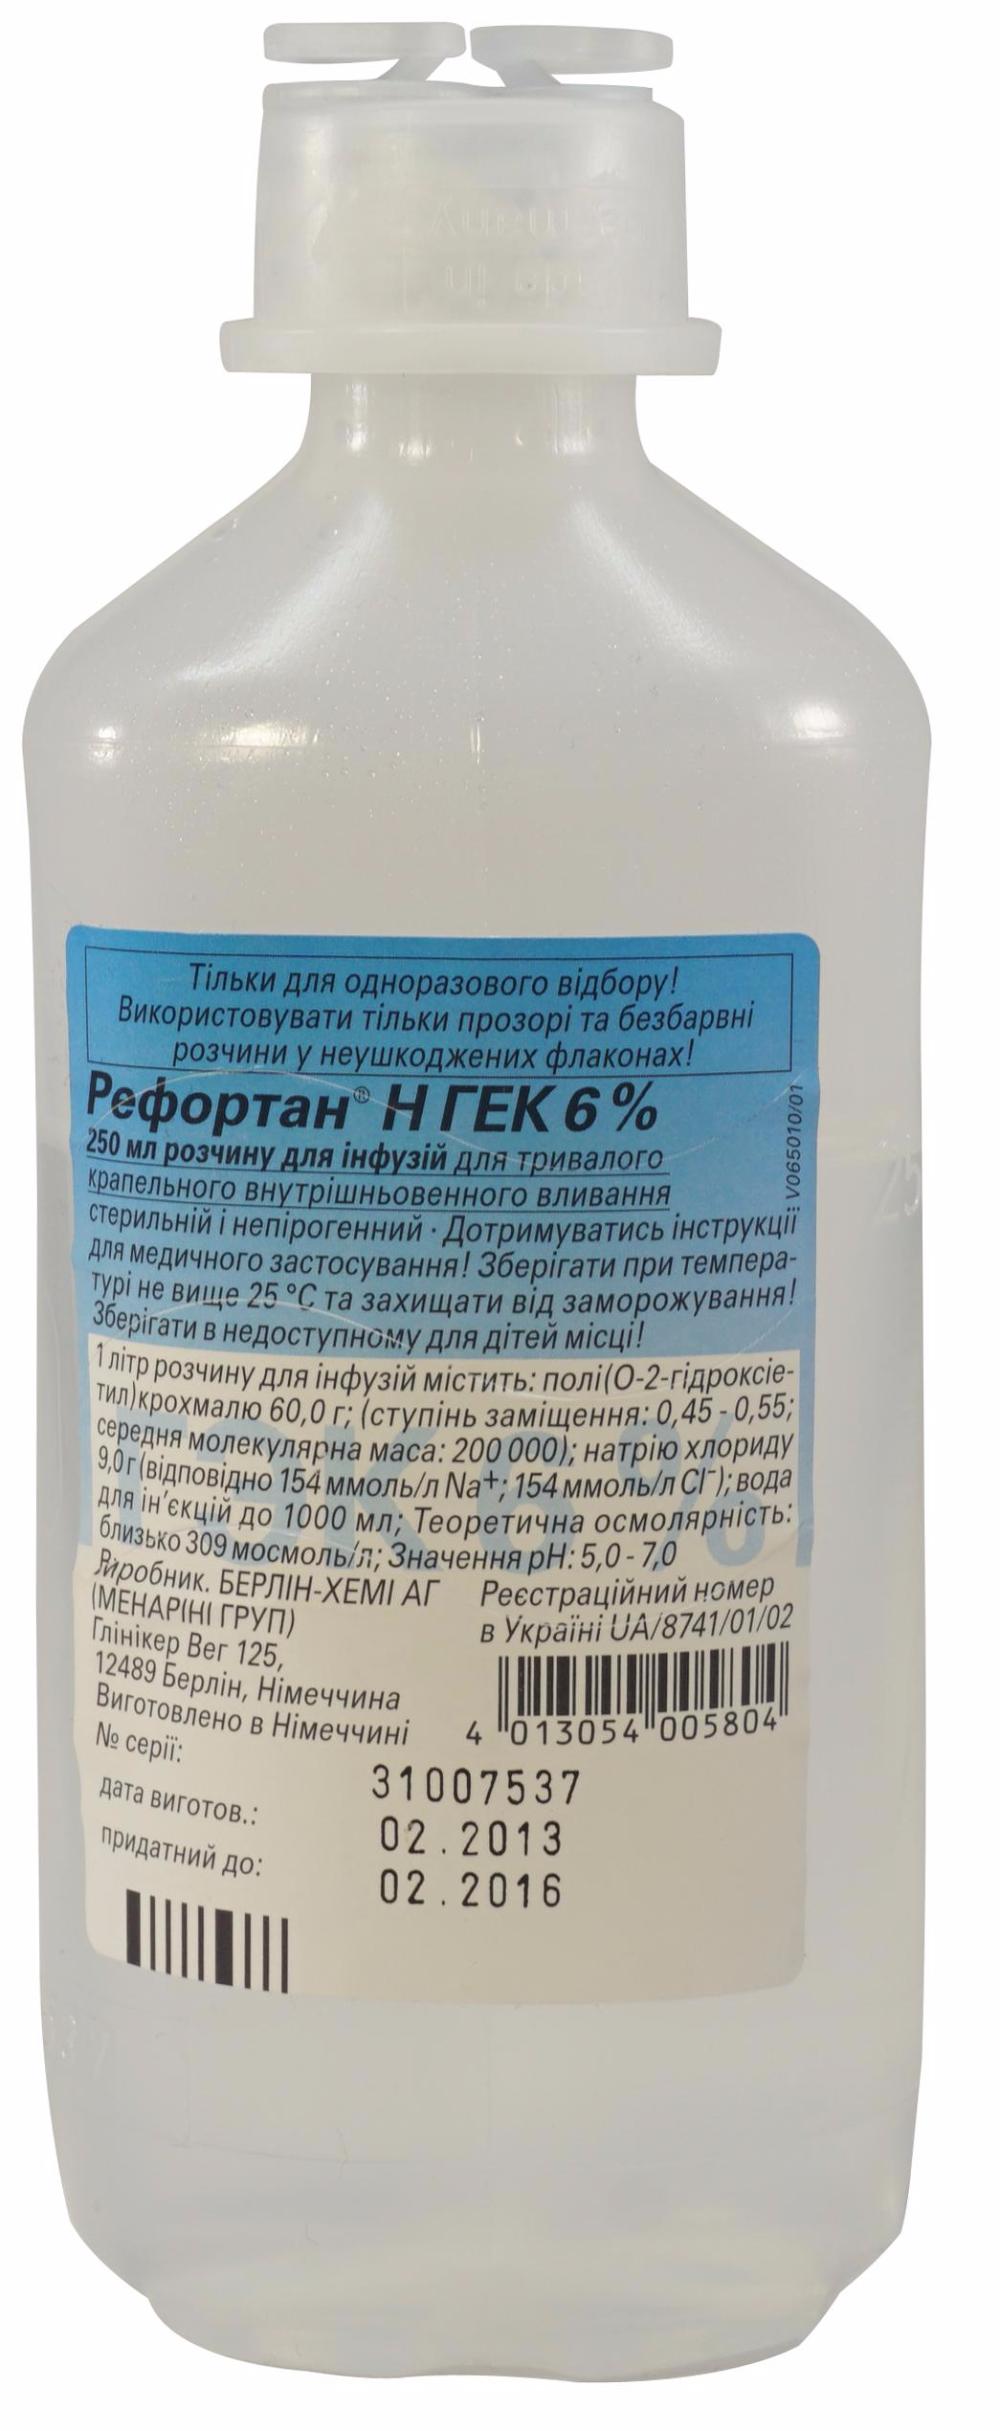 5175 ГЕК-ІНФУЗІЯ 6 % - Hydroxyethylstarch